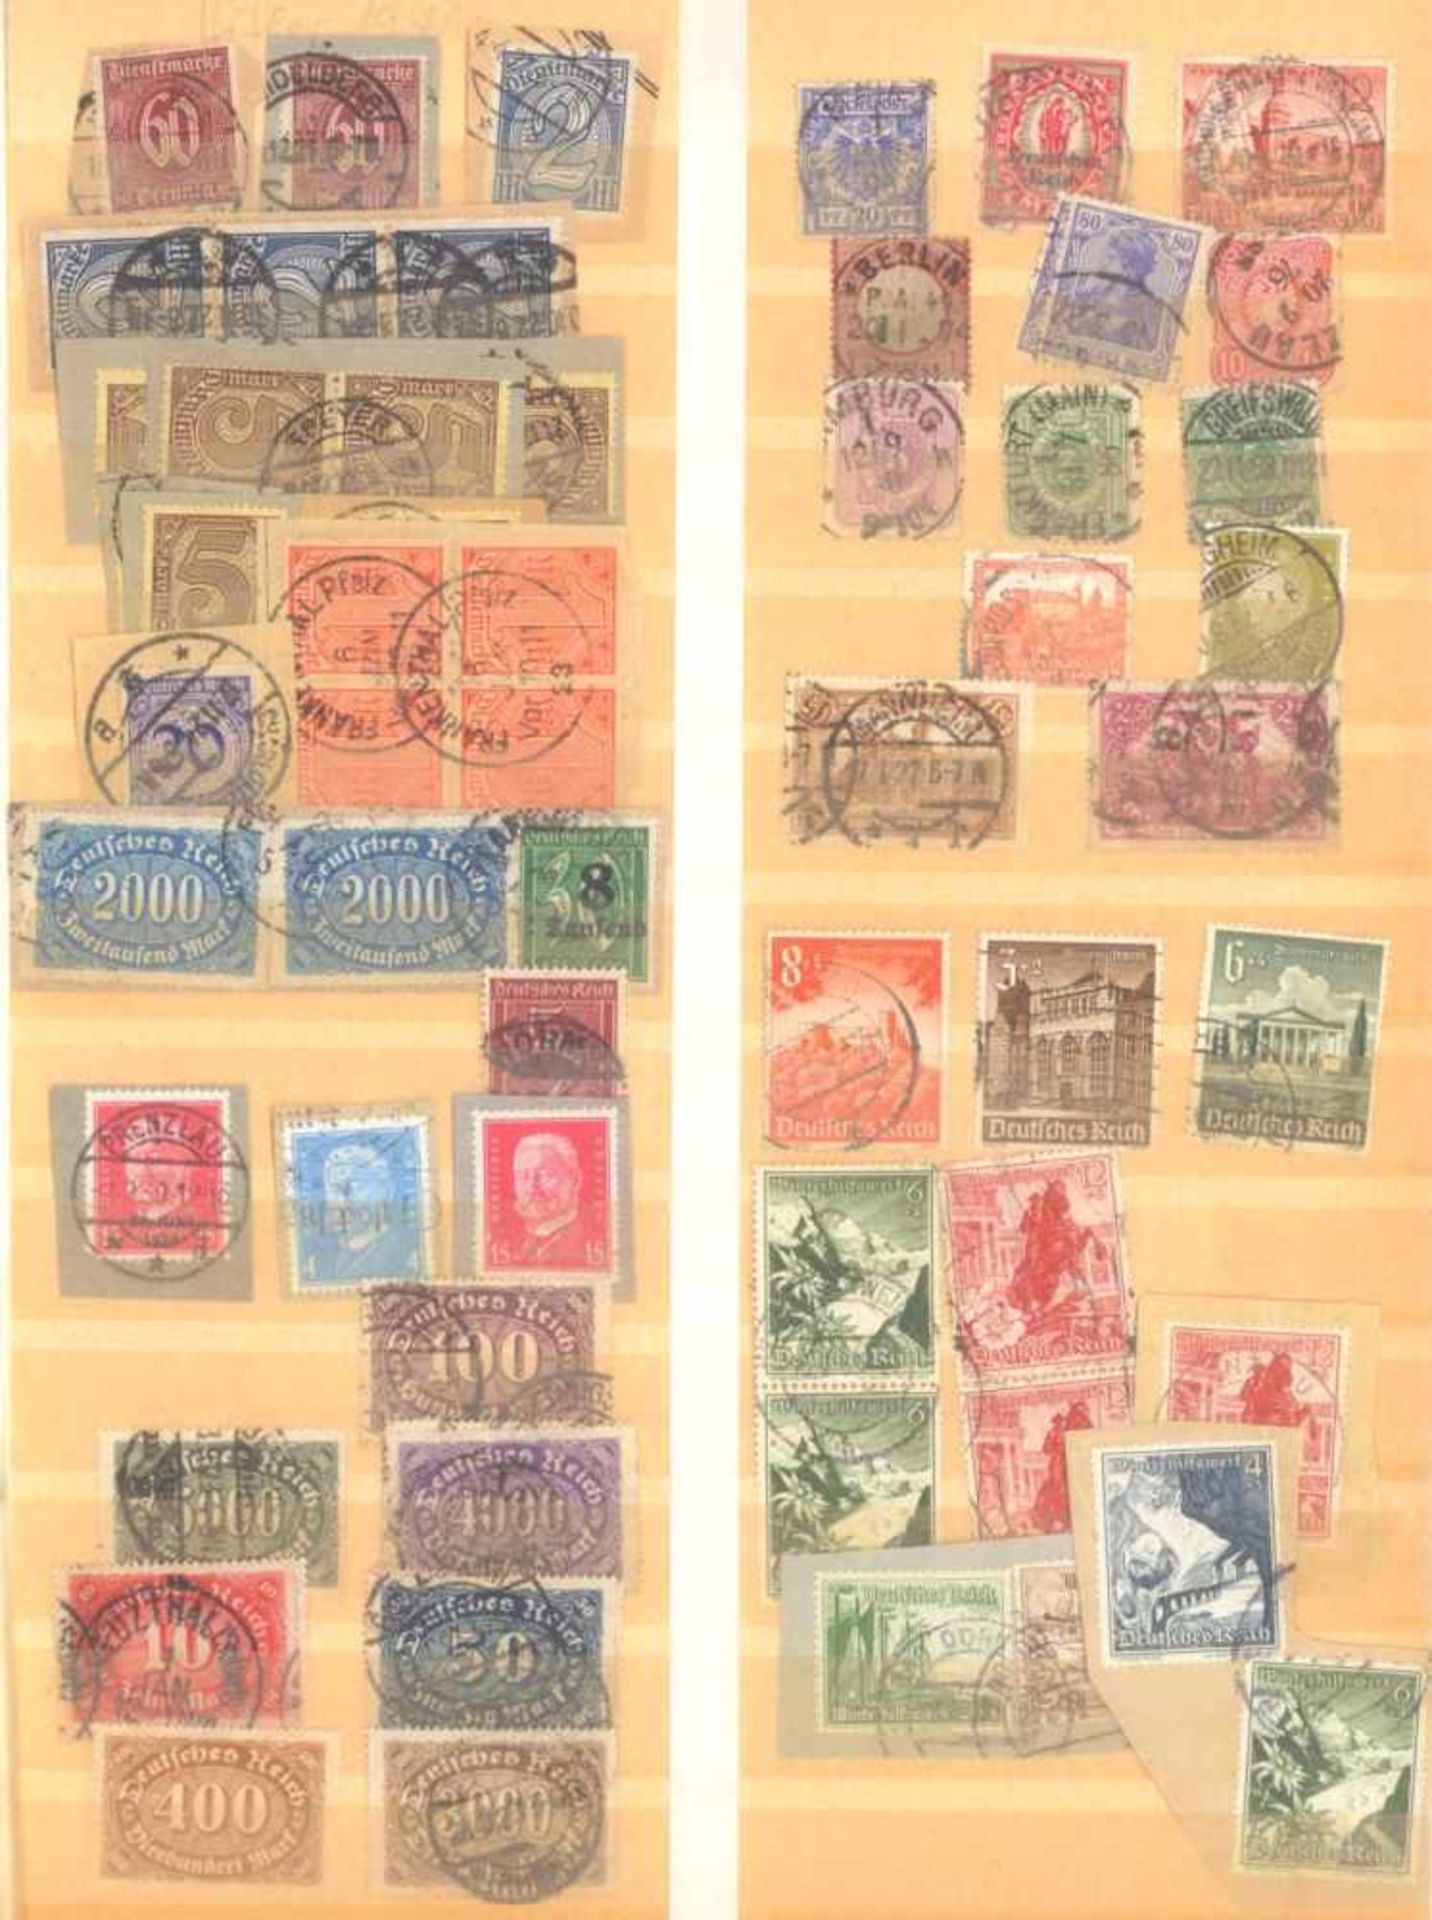 FRANKENTHALER NACHLASSuriger Nachlass mit Briefmarken und Belegen. Dabei DeutschesReich, altes - Bild 13 aus 46